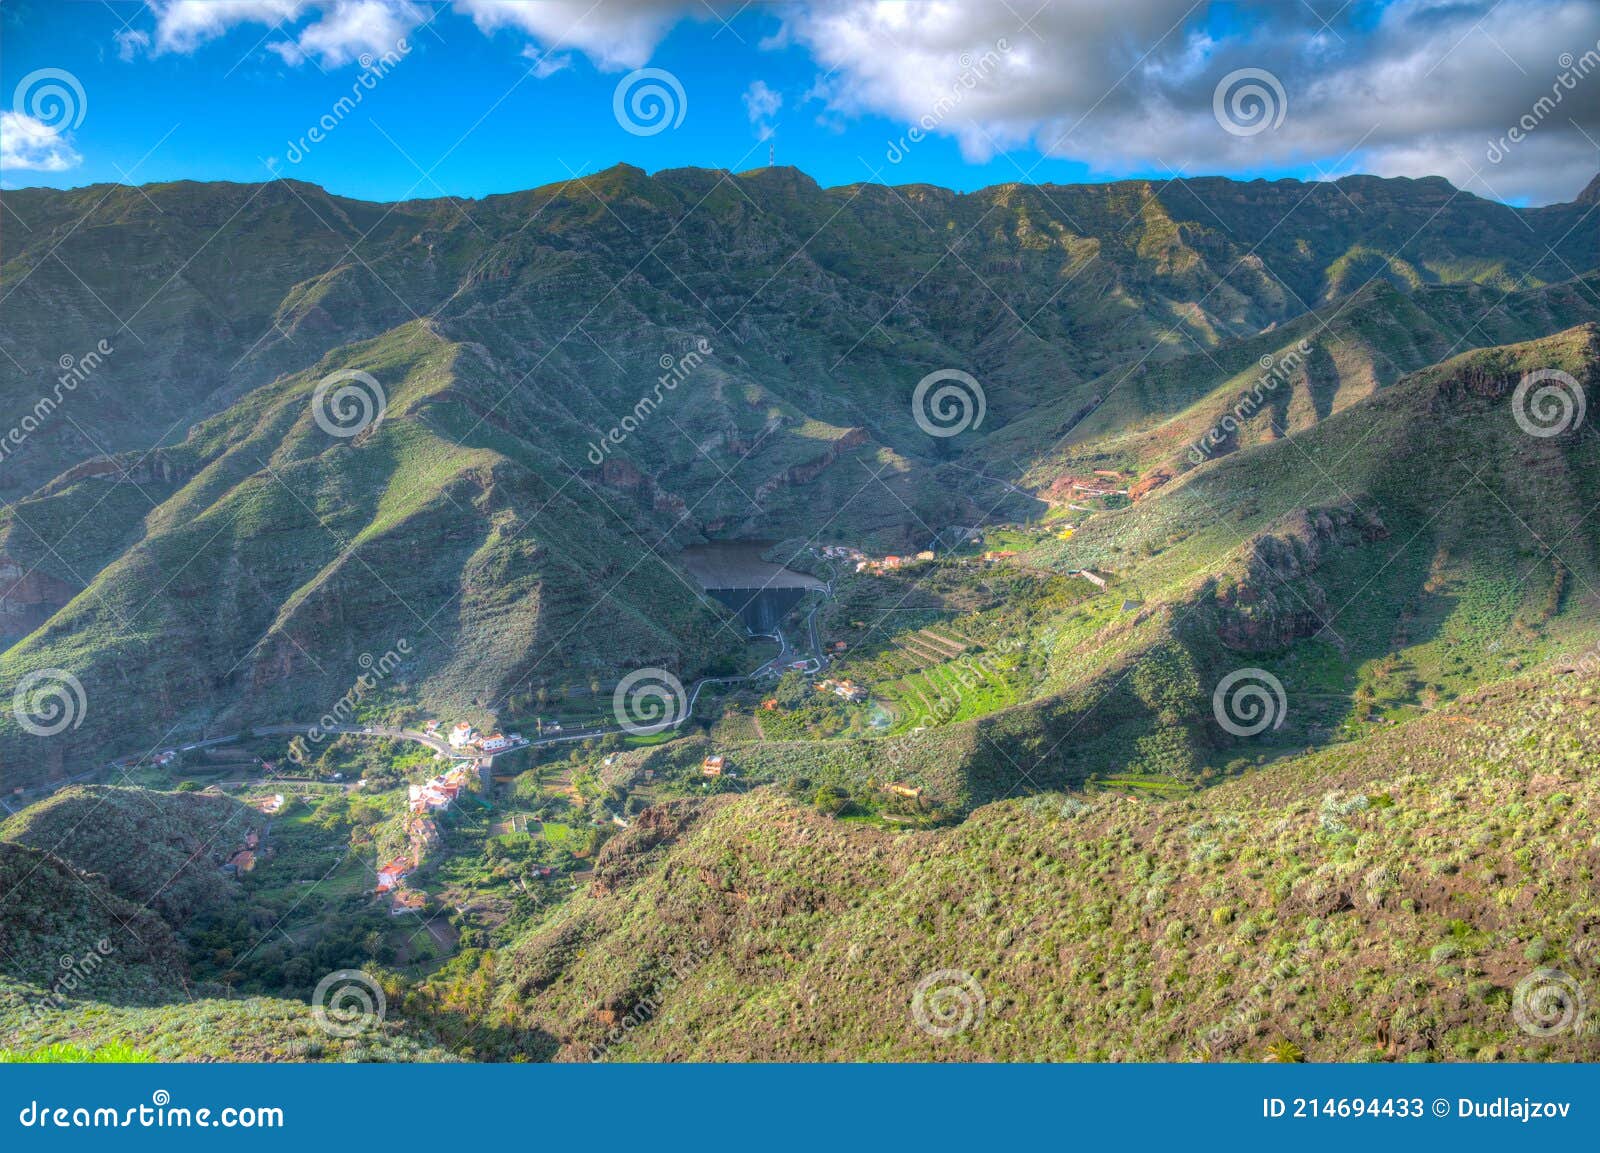 aerial view of la gomera from mirador de manaderos lookout, canary islands, spain